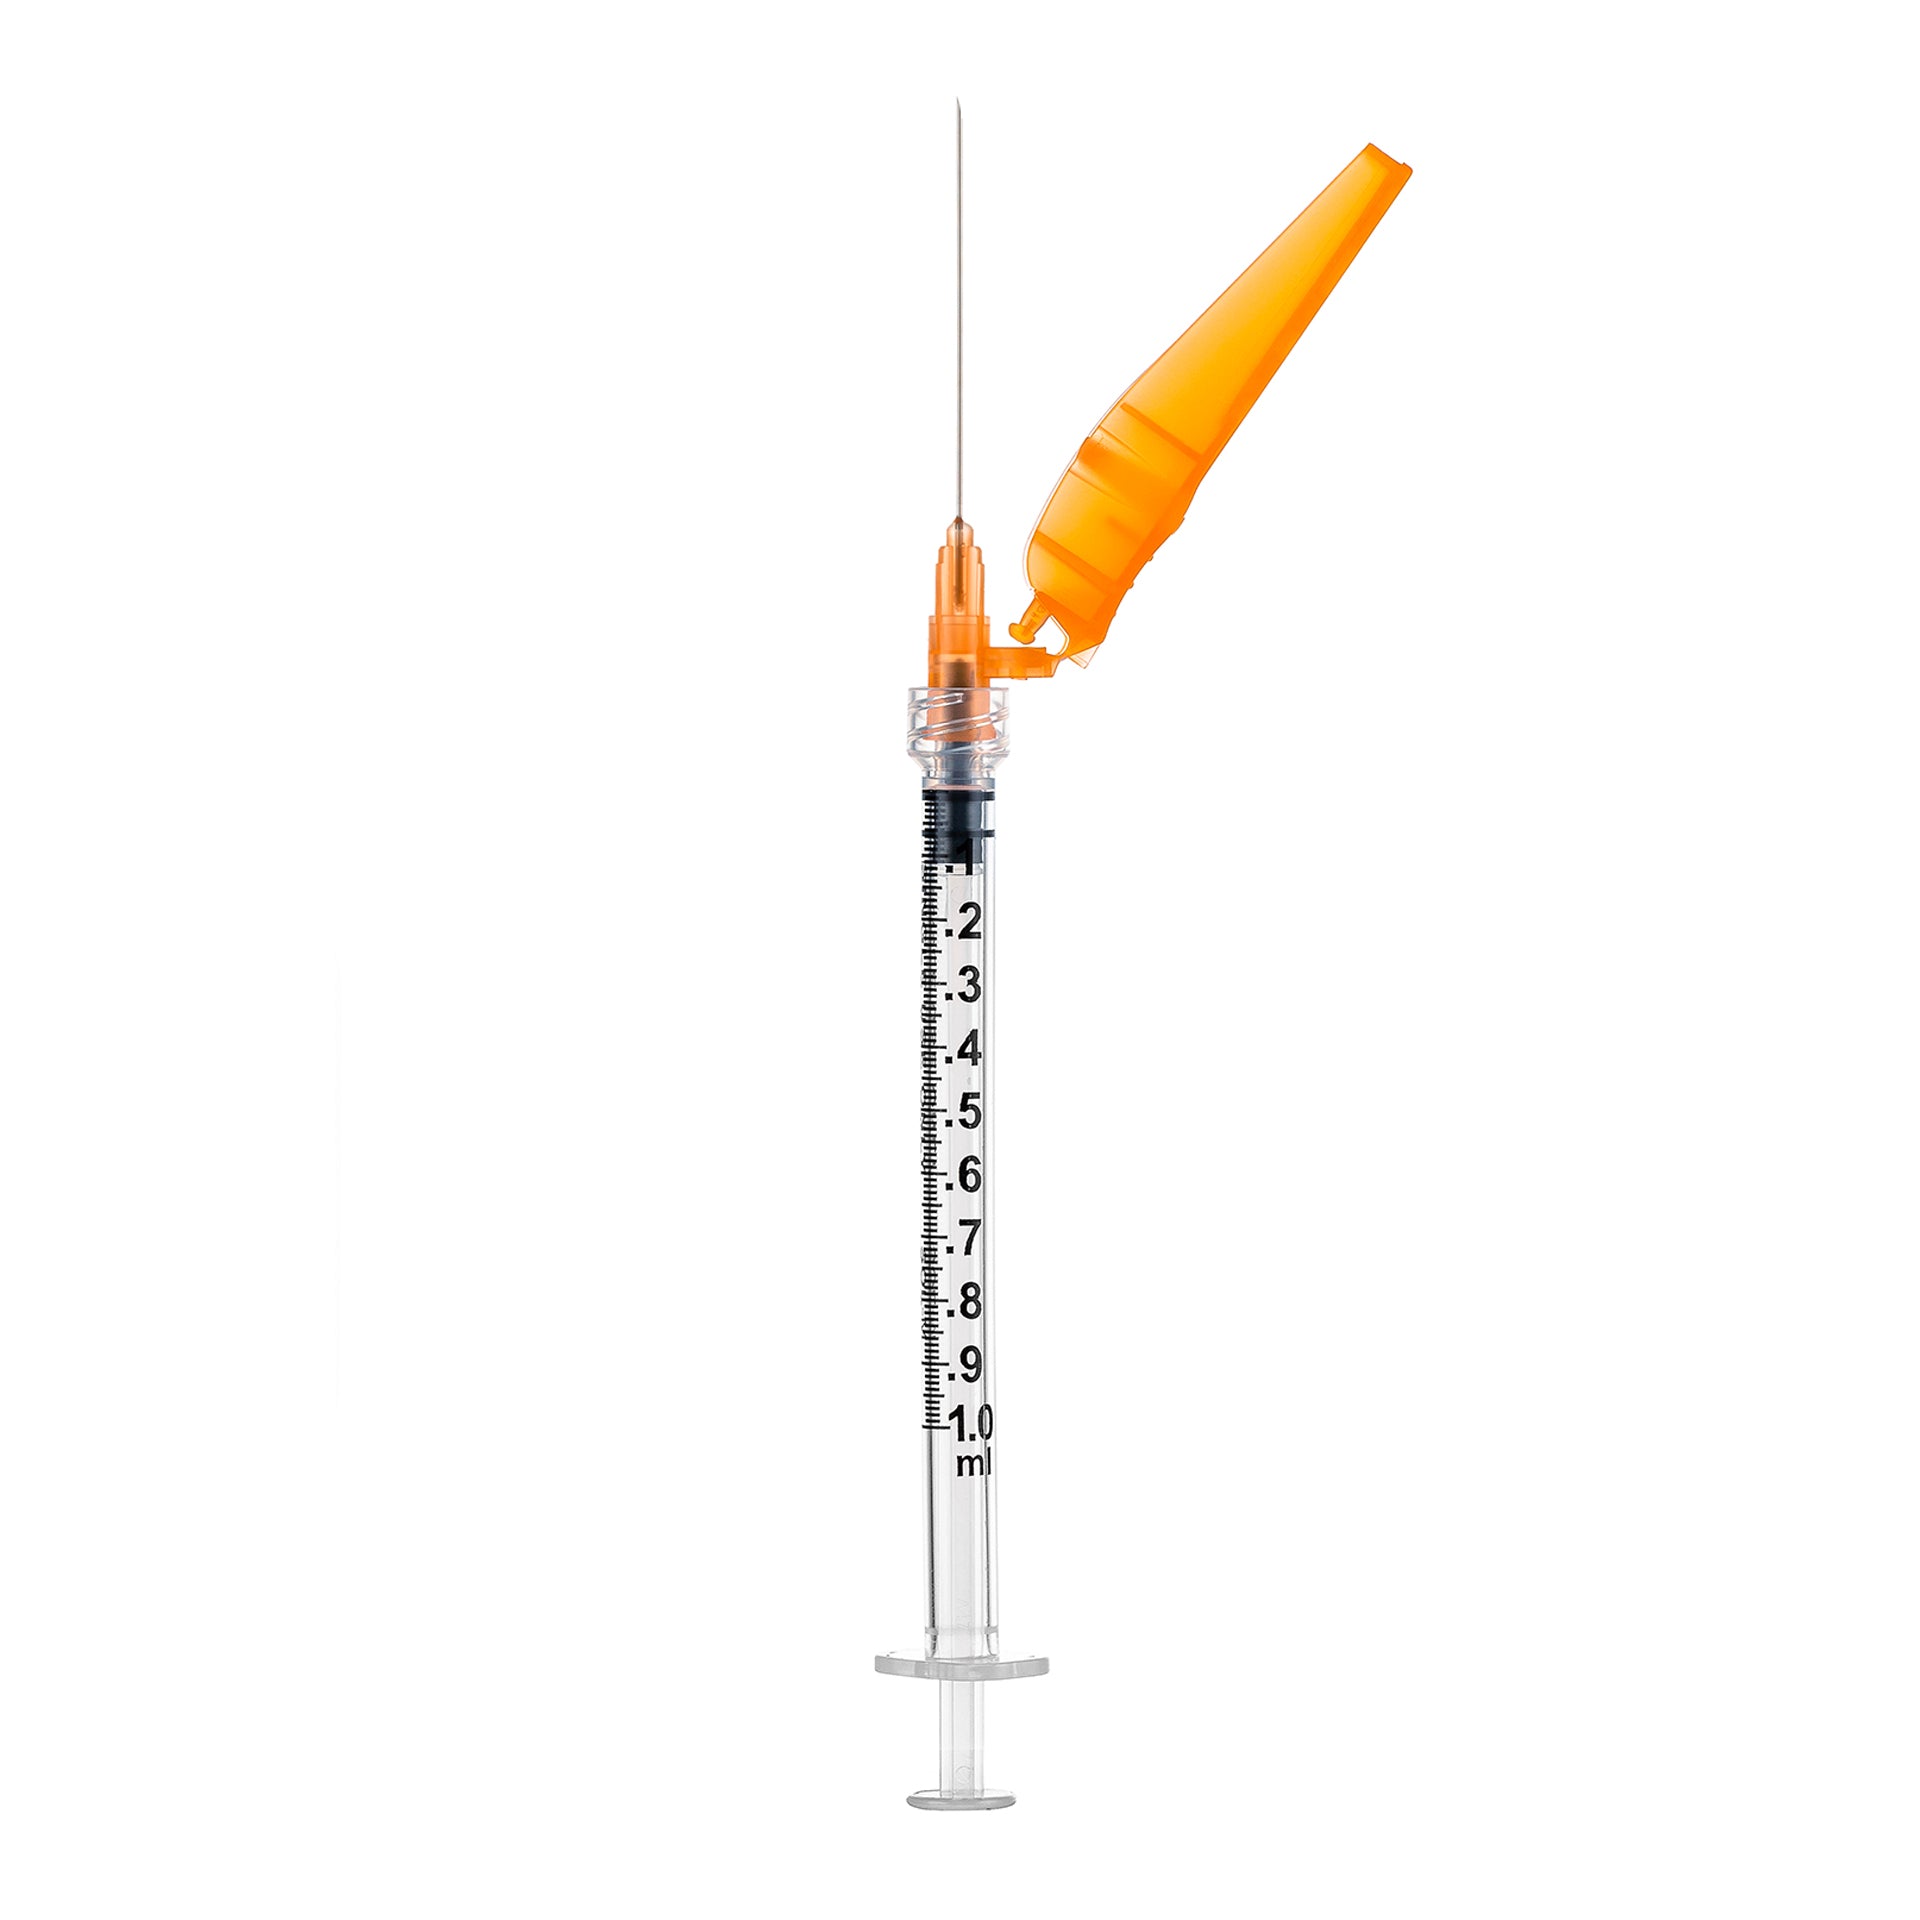 BX/50 - SOL-CARE 1ml Luer Lock Syringe w/Safety Needle 25G*1 (needle aside)